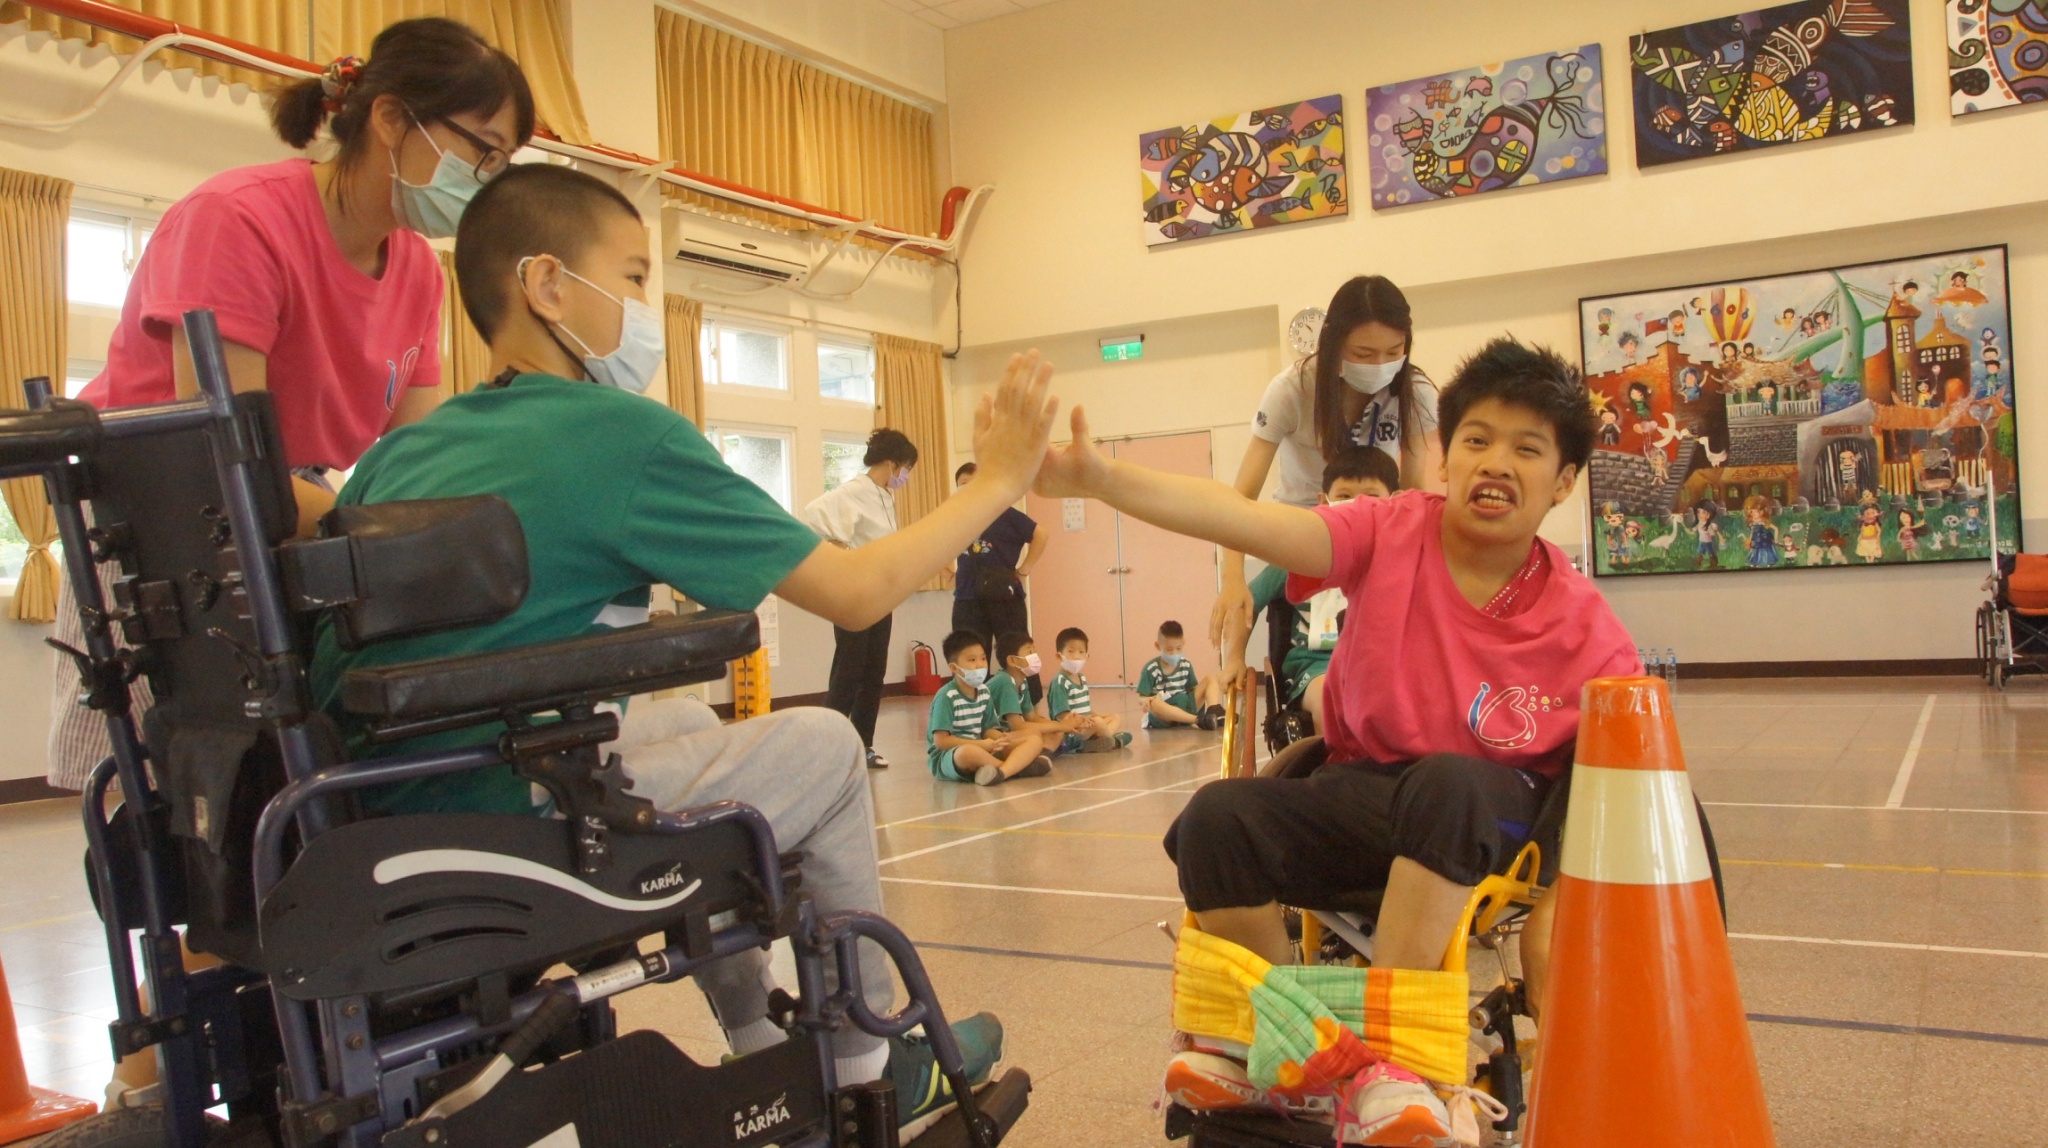 小瑄（右）與淡水國小學生比賽輪椅競速 學生敬佩小瑄的精神 與她開心擊掌-